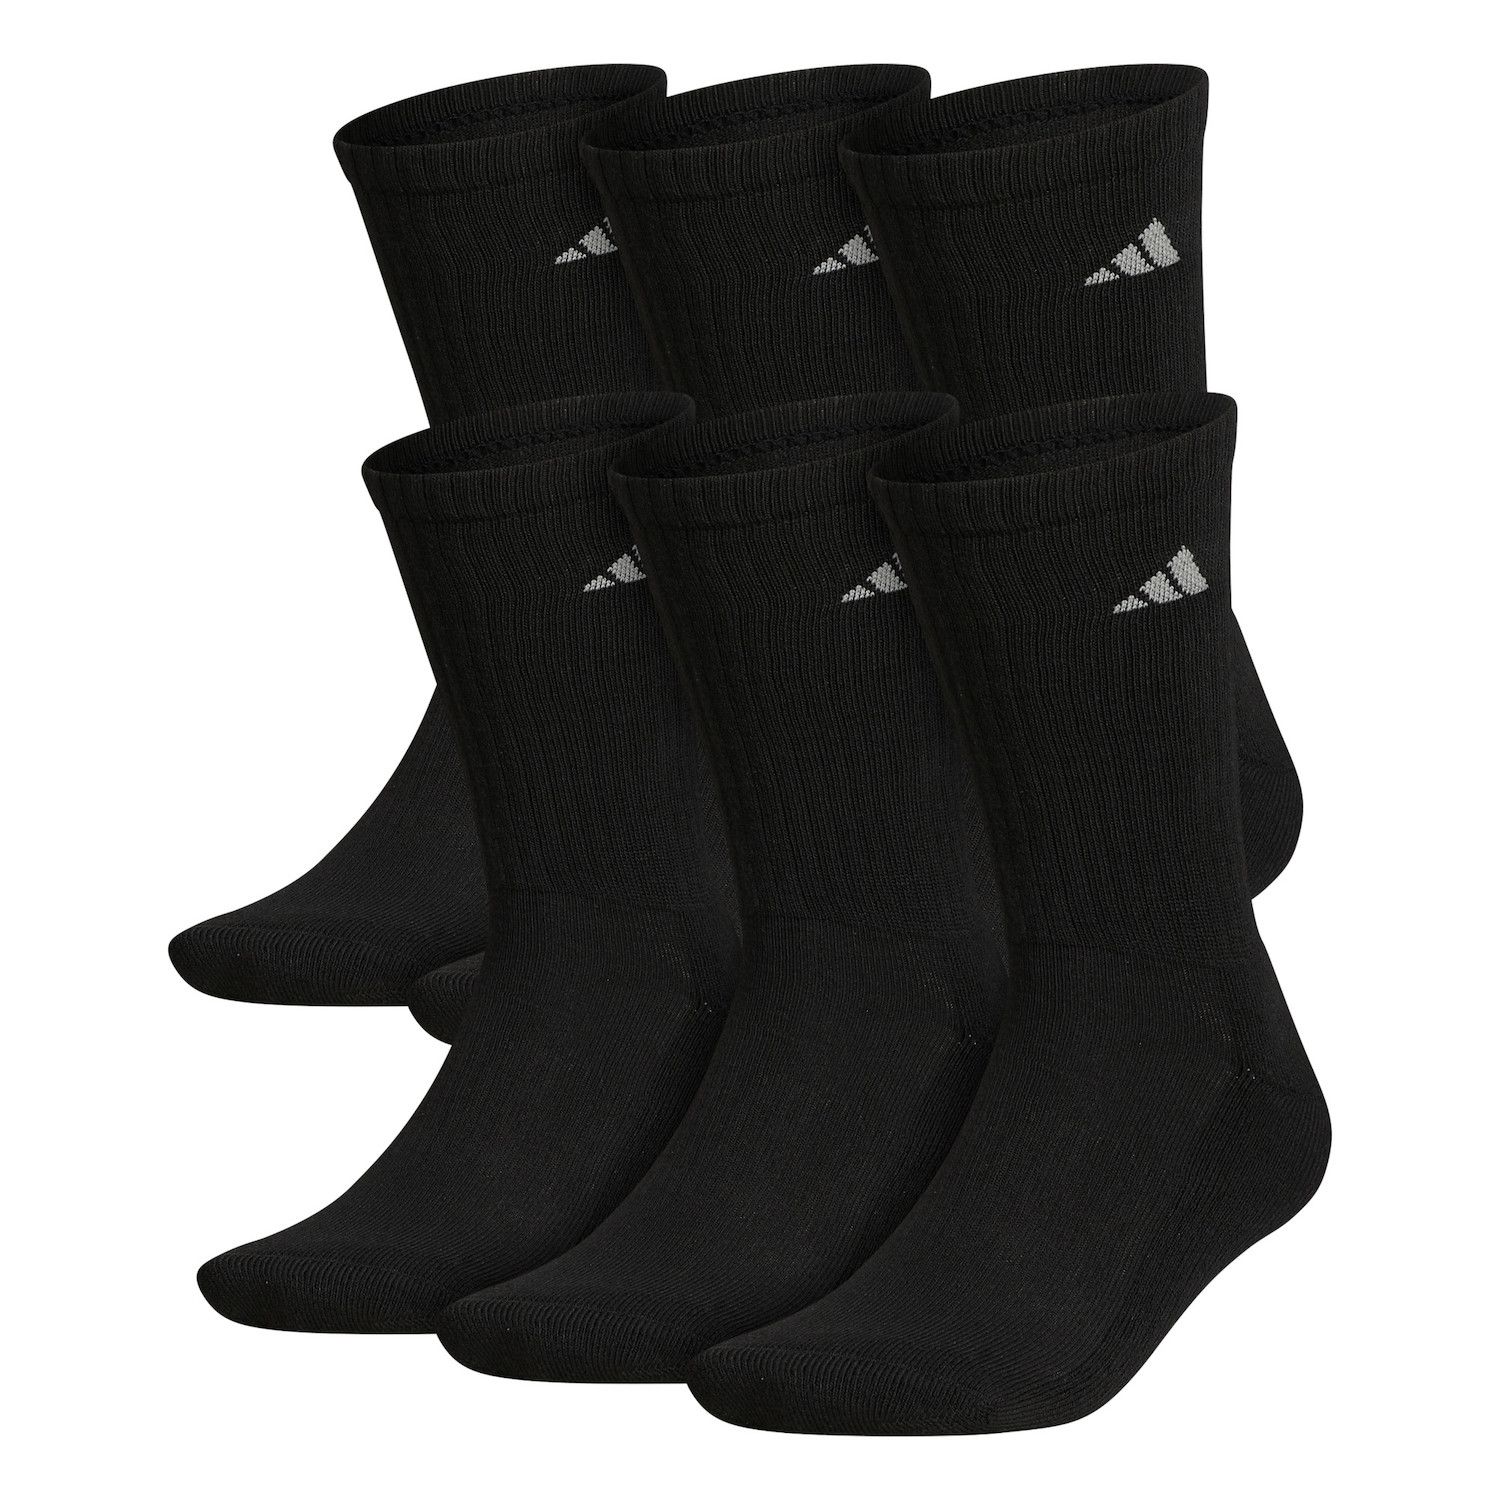 adidas performance socks